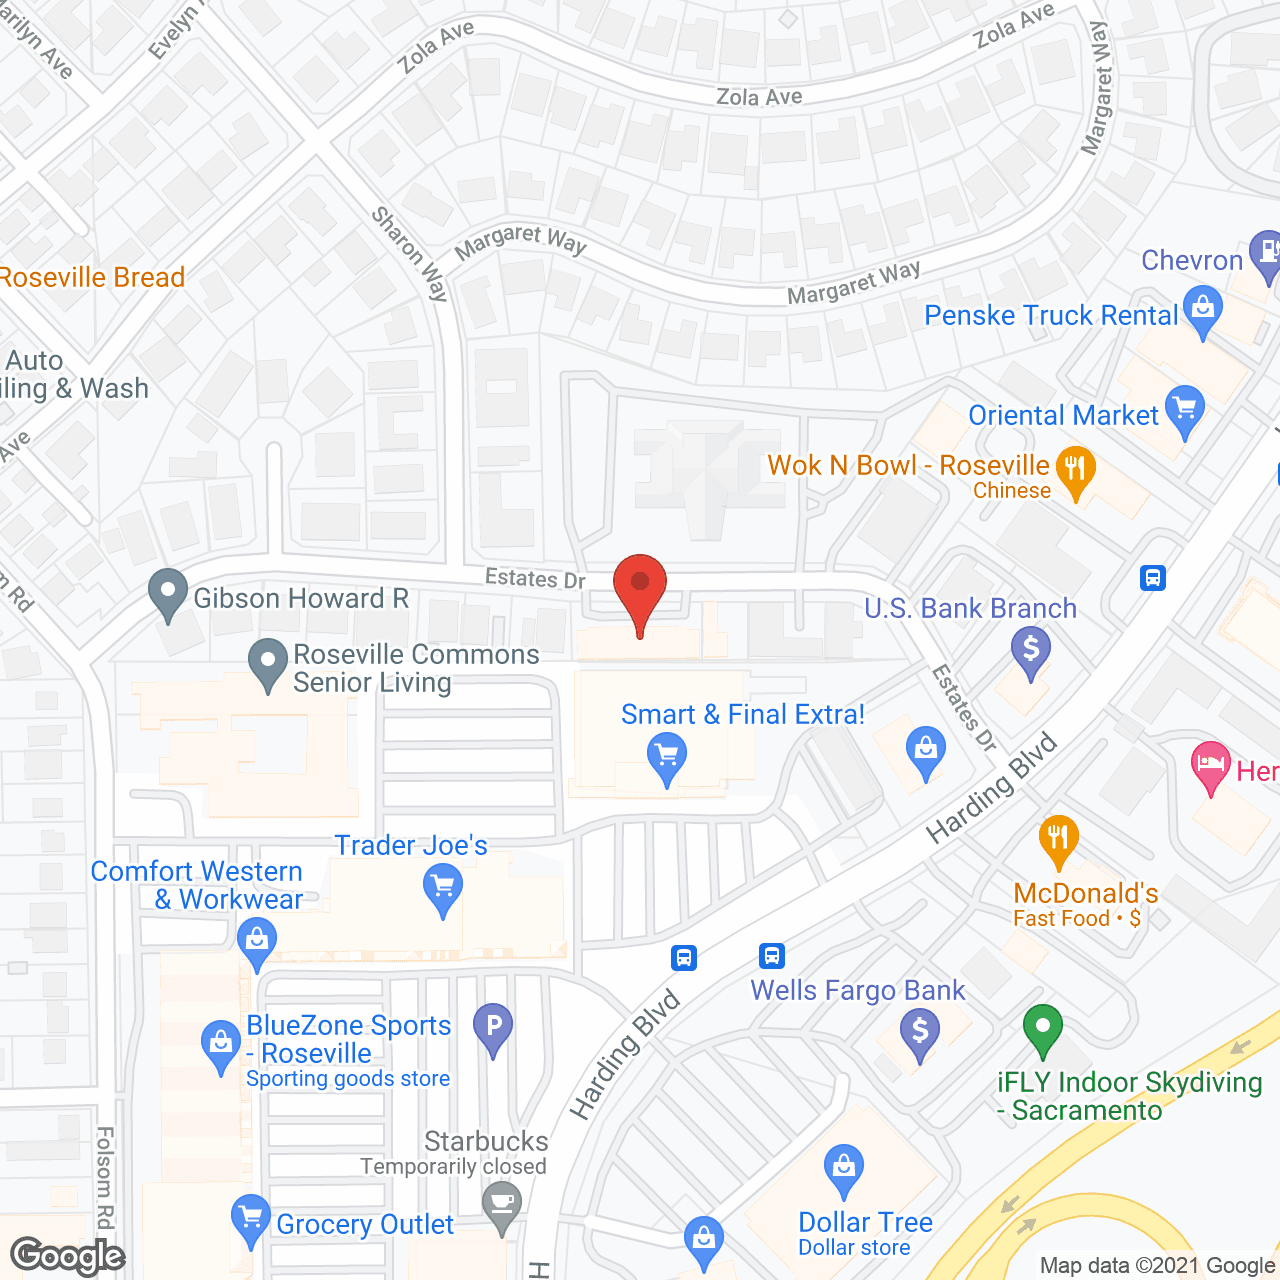 BrightStar Roseville in google map